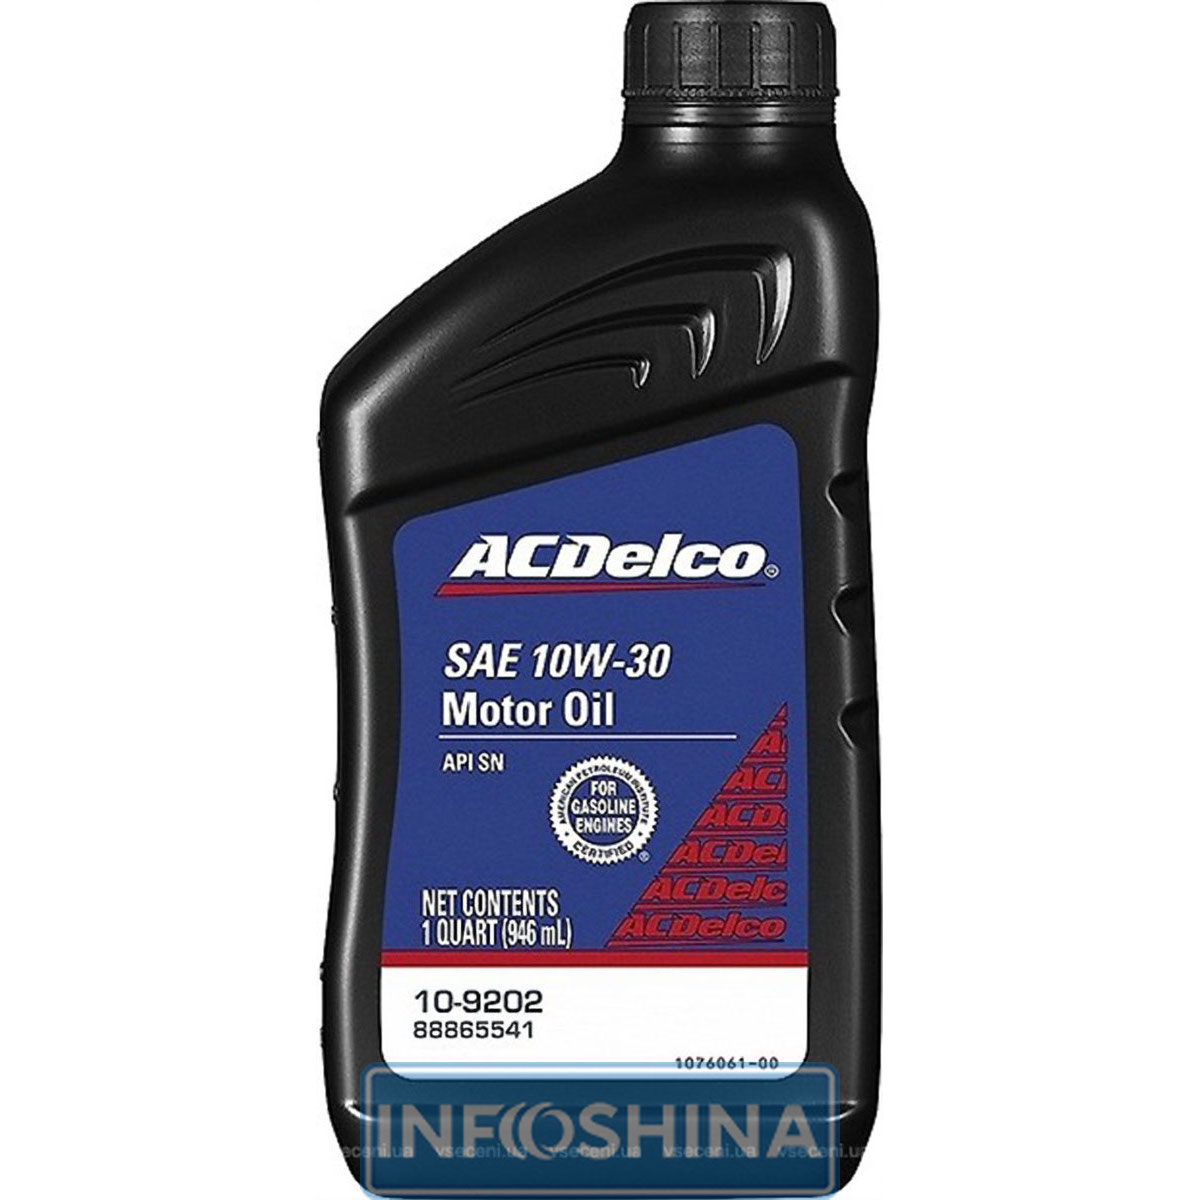 ACDelco Motor Oil 10W-30